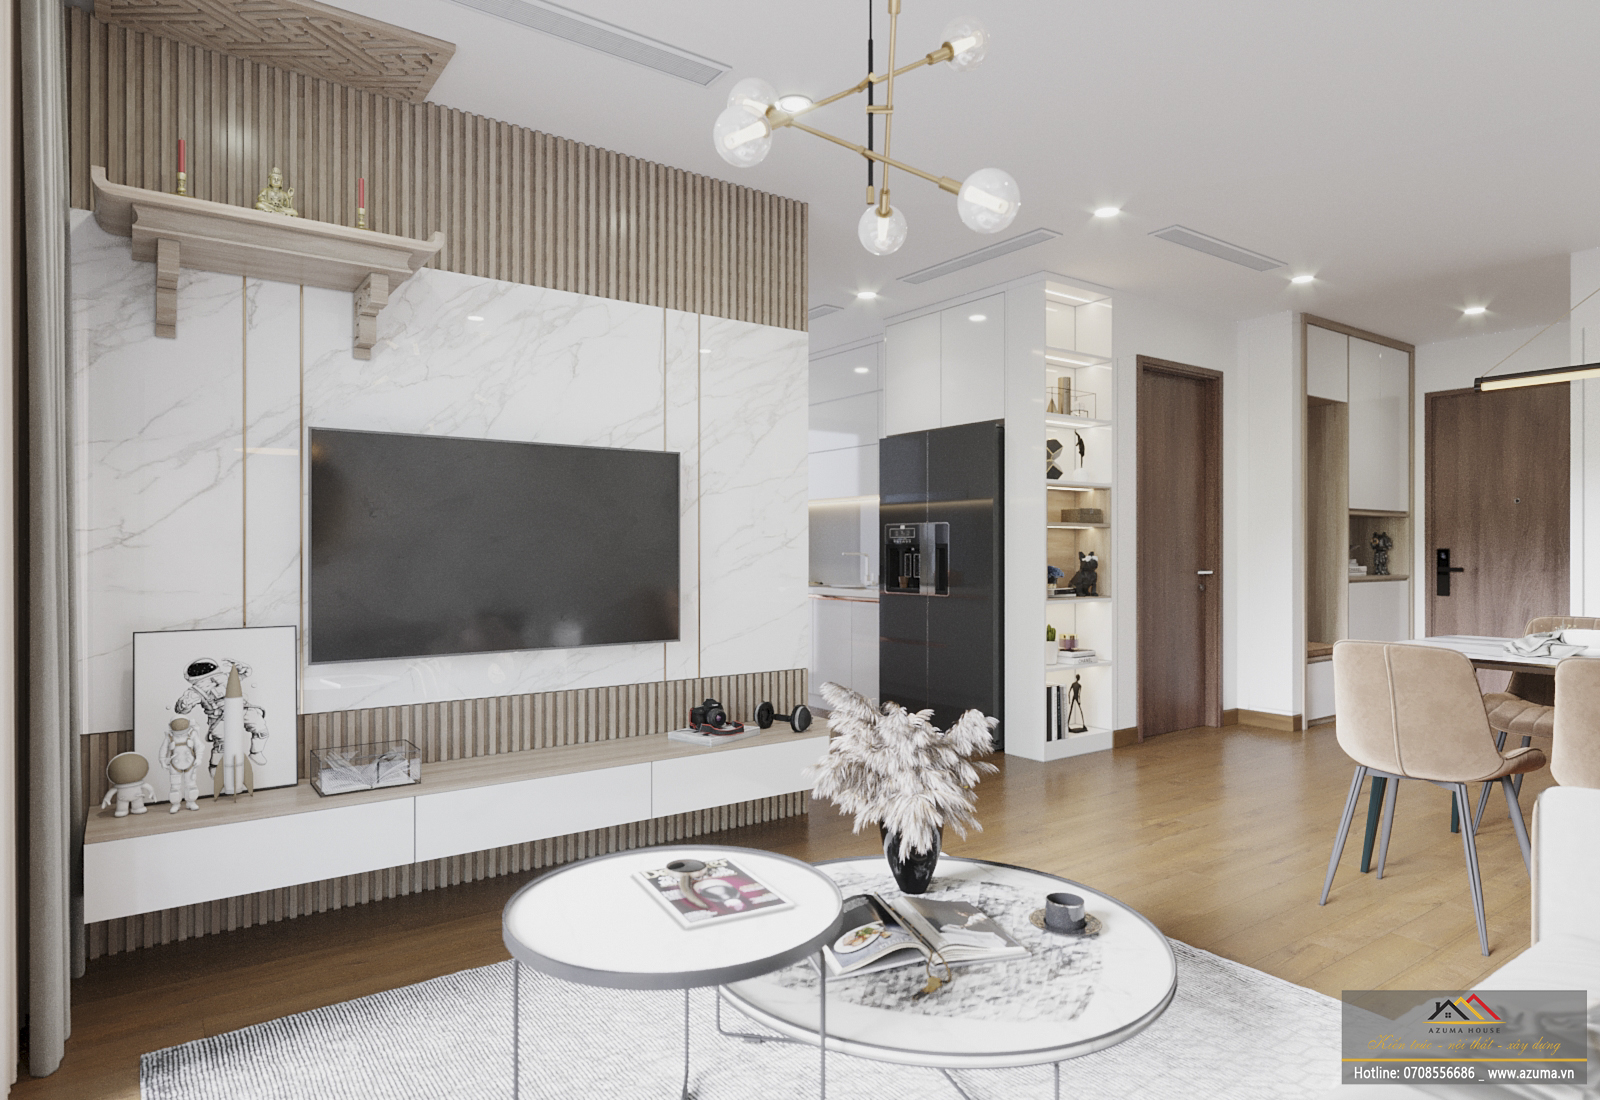 Tham khảo mẫu thiết kế nội thất cho căn hộ chung cư cao cấp The Tera An Hưng - Anh Chúc